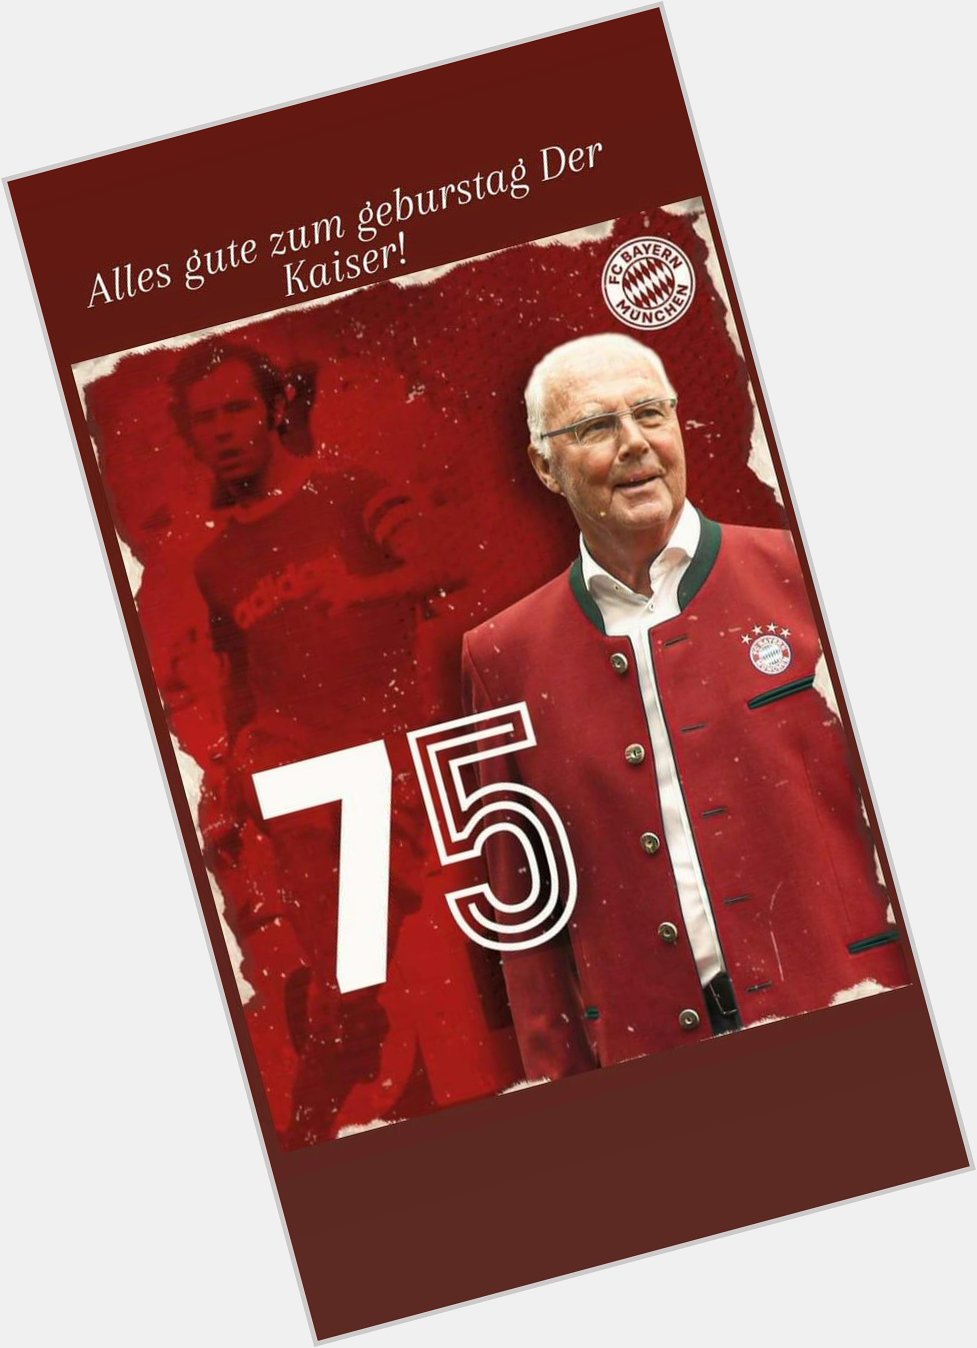 Happy birthday Franz Beckenbauer!... 